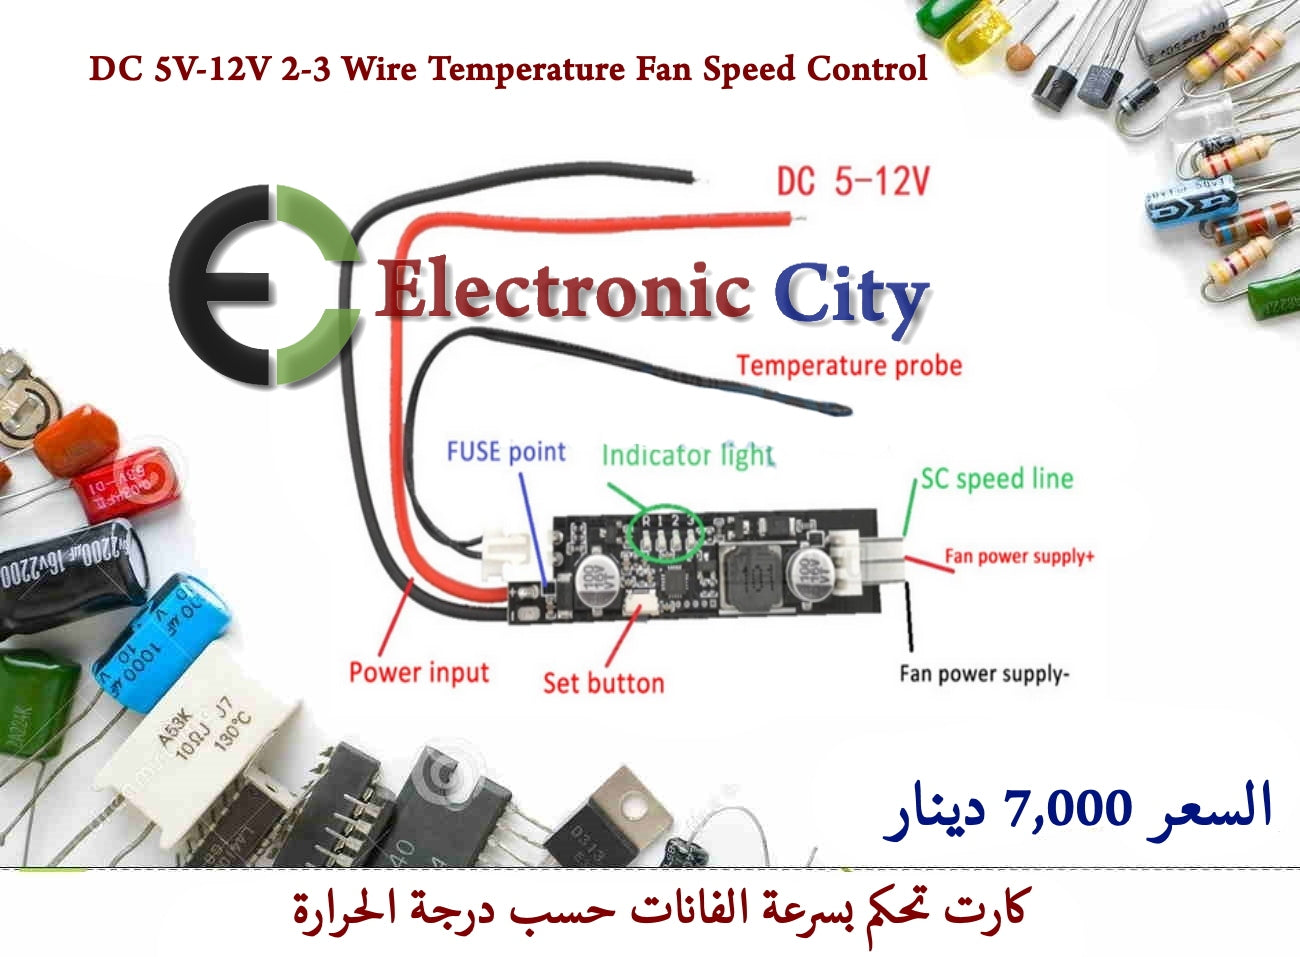 DC 5V-12V 2-3 Wire Temperature Fan Speed Control